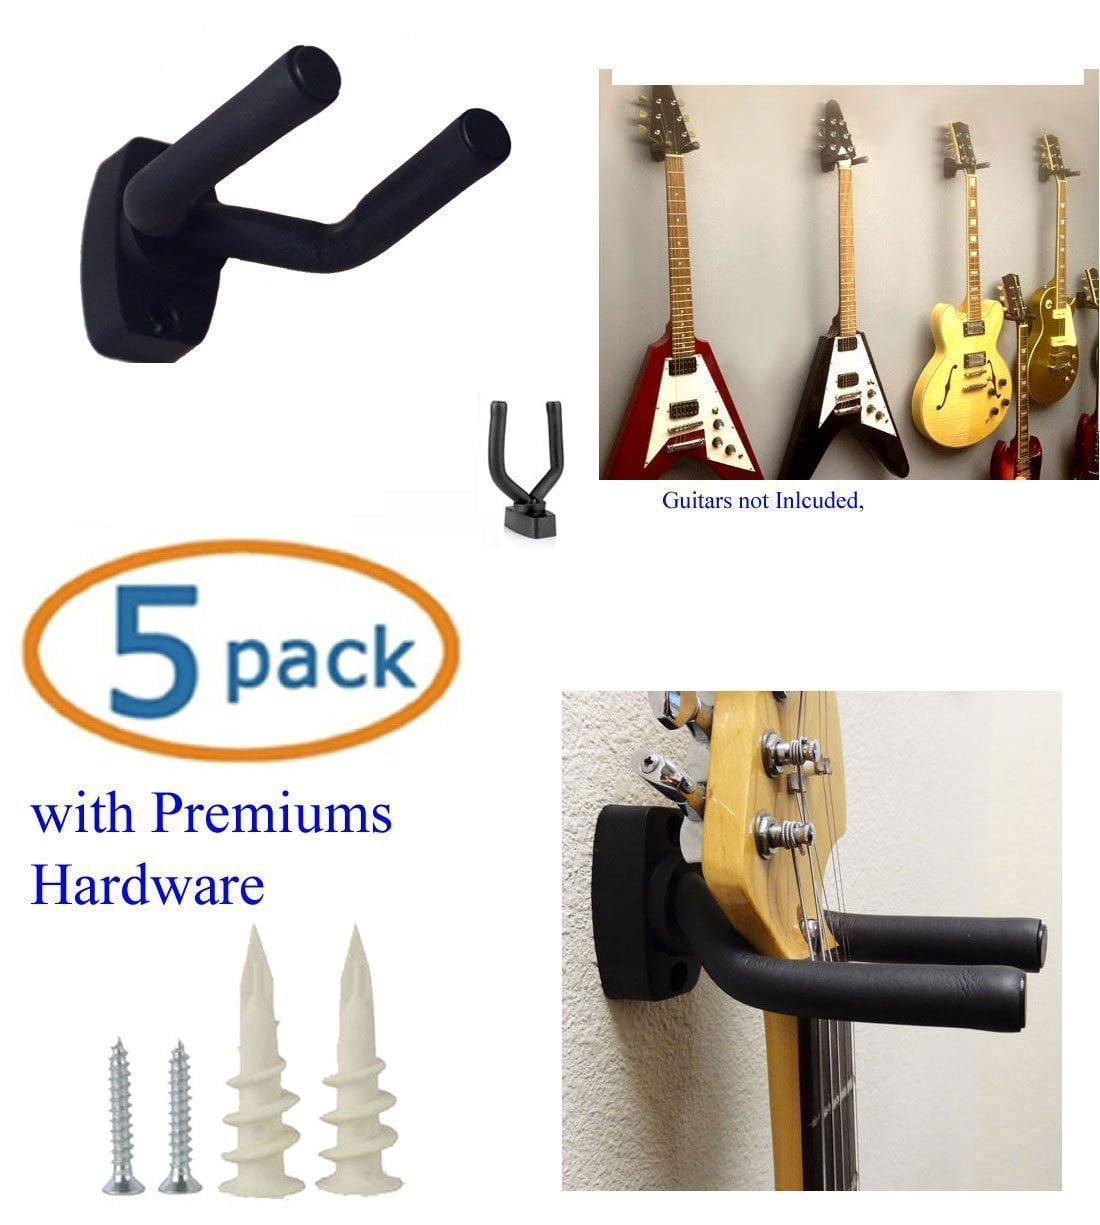 Black Guitar hook Metal Holder Hangers Fits All Size Guitars Bass Guitar Hanger Wall Mount 2 Pack Guitar Holder Ukulele Banjo Mandolin 